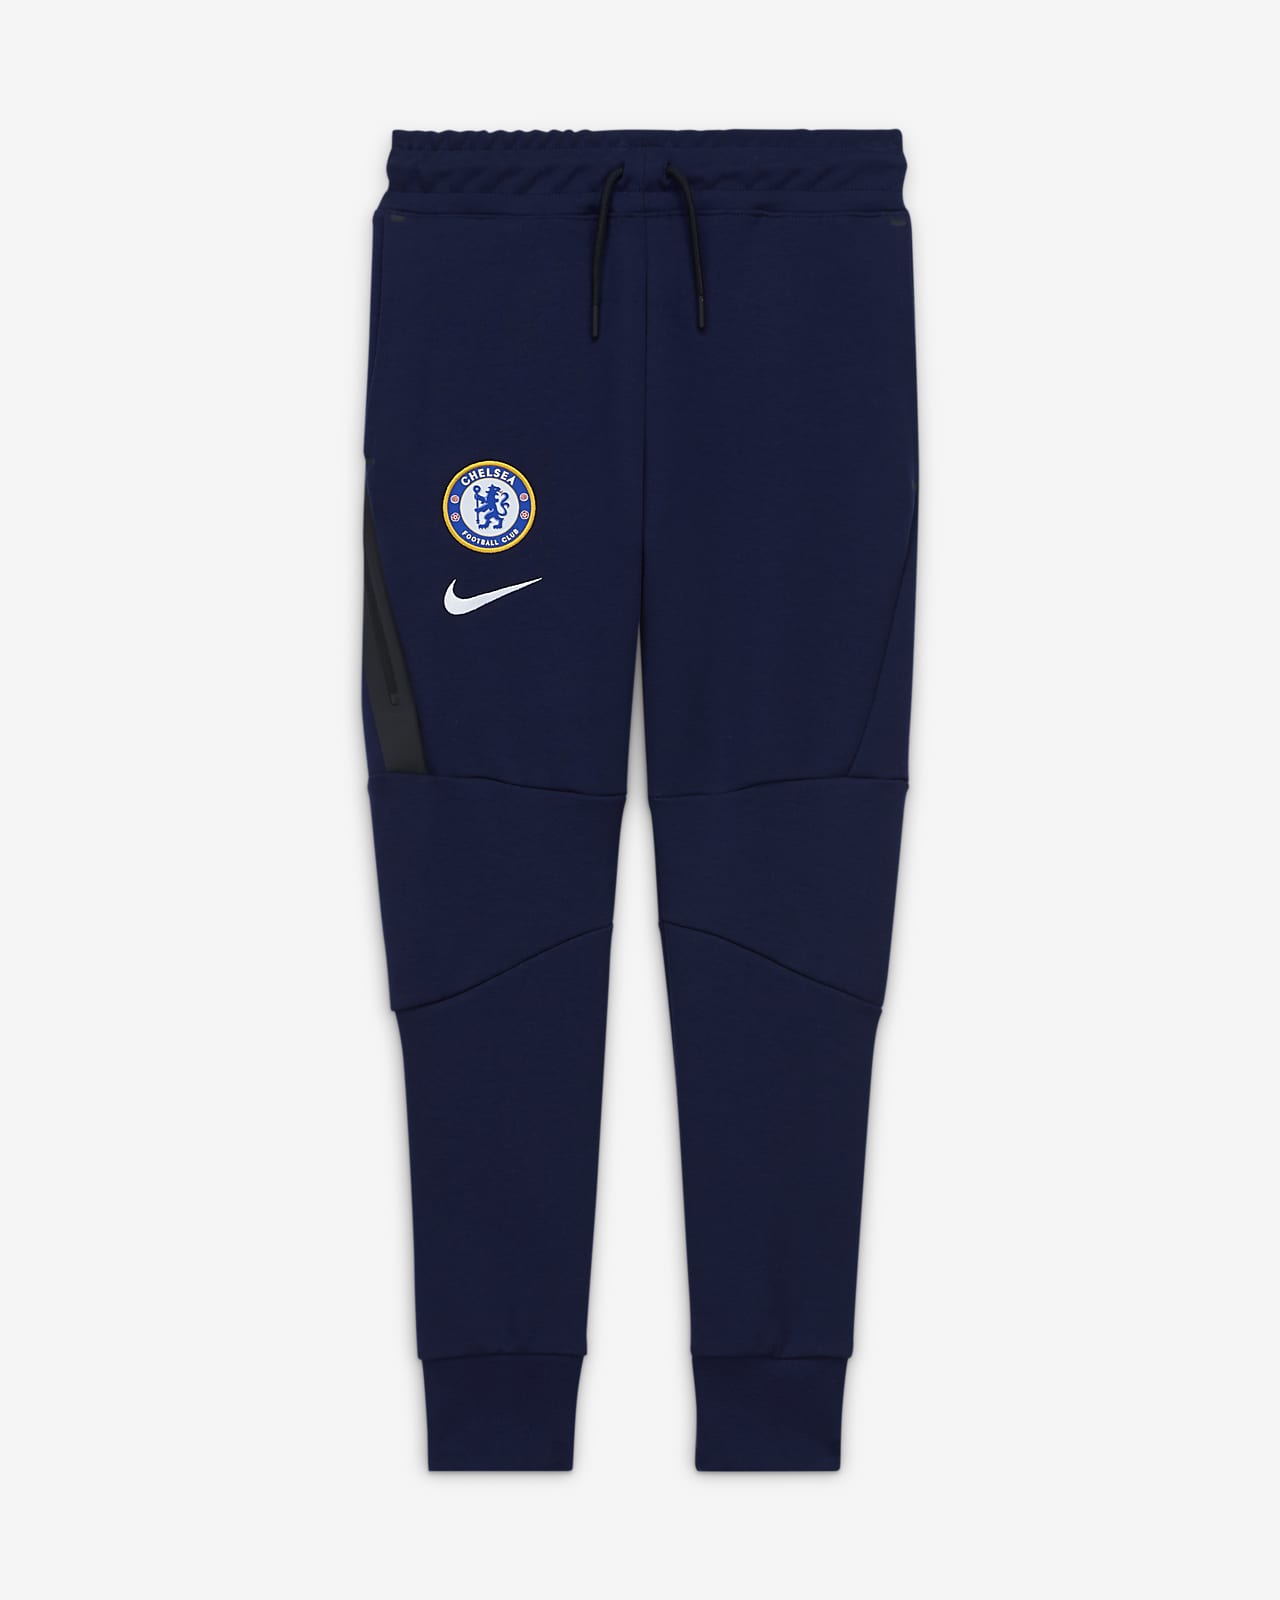 Chelsea F.C. Older Kids' Fleece Pants 